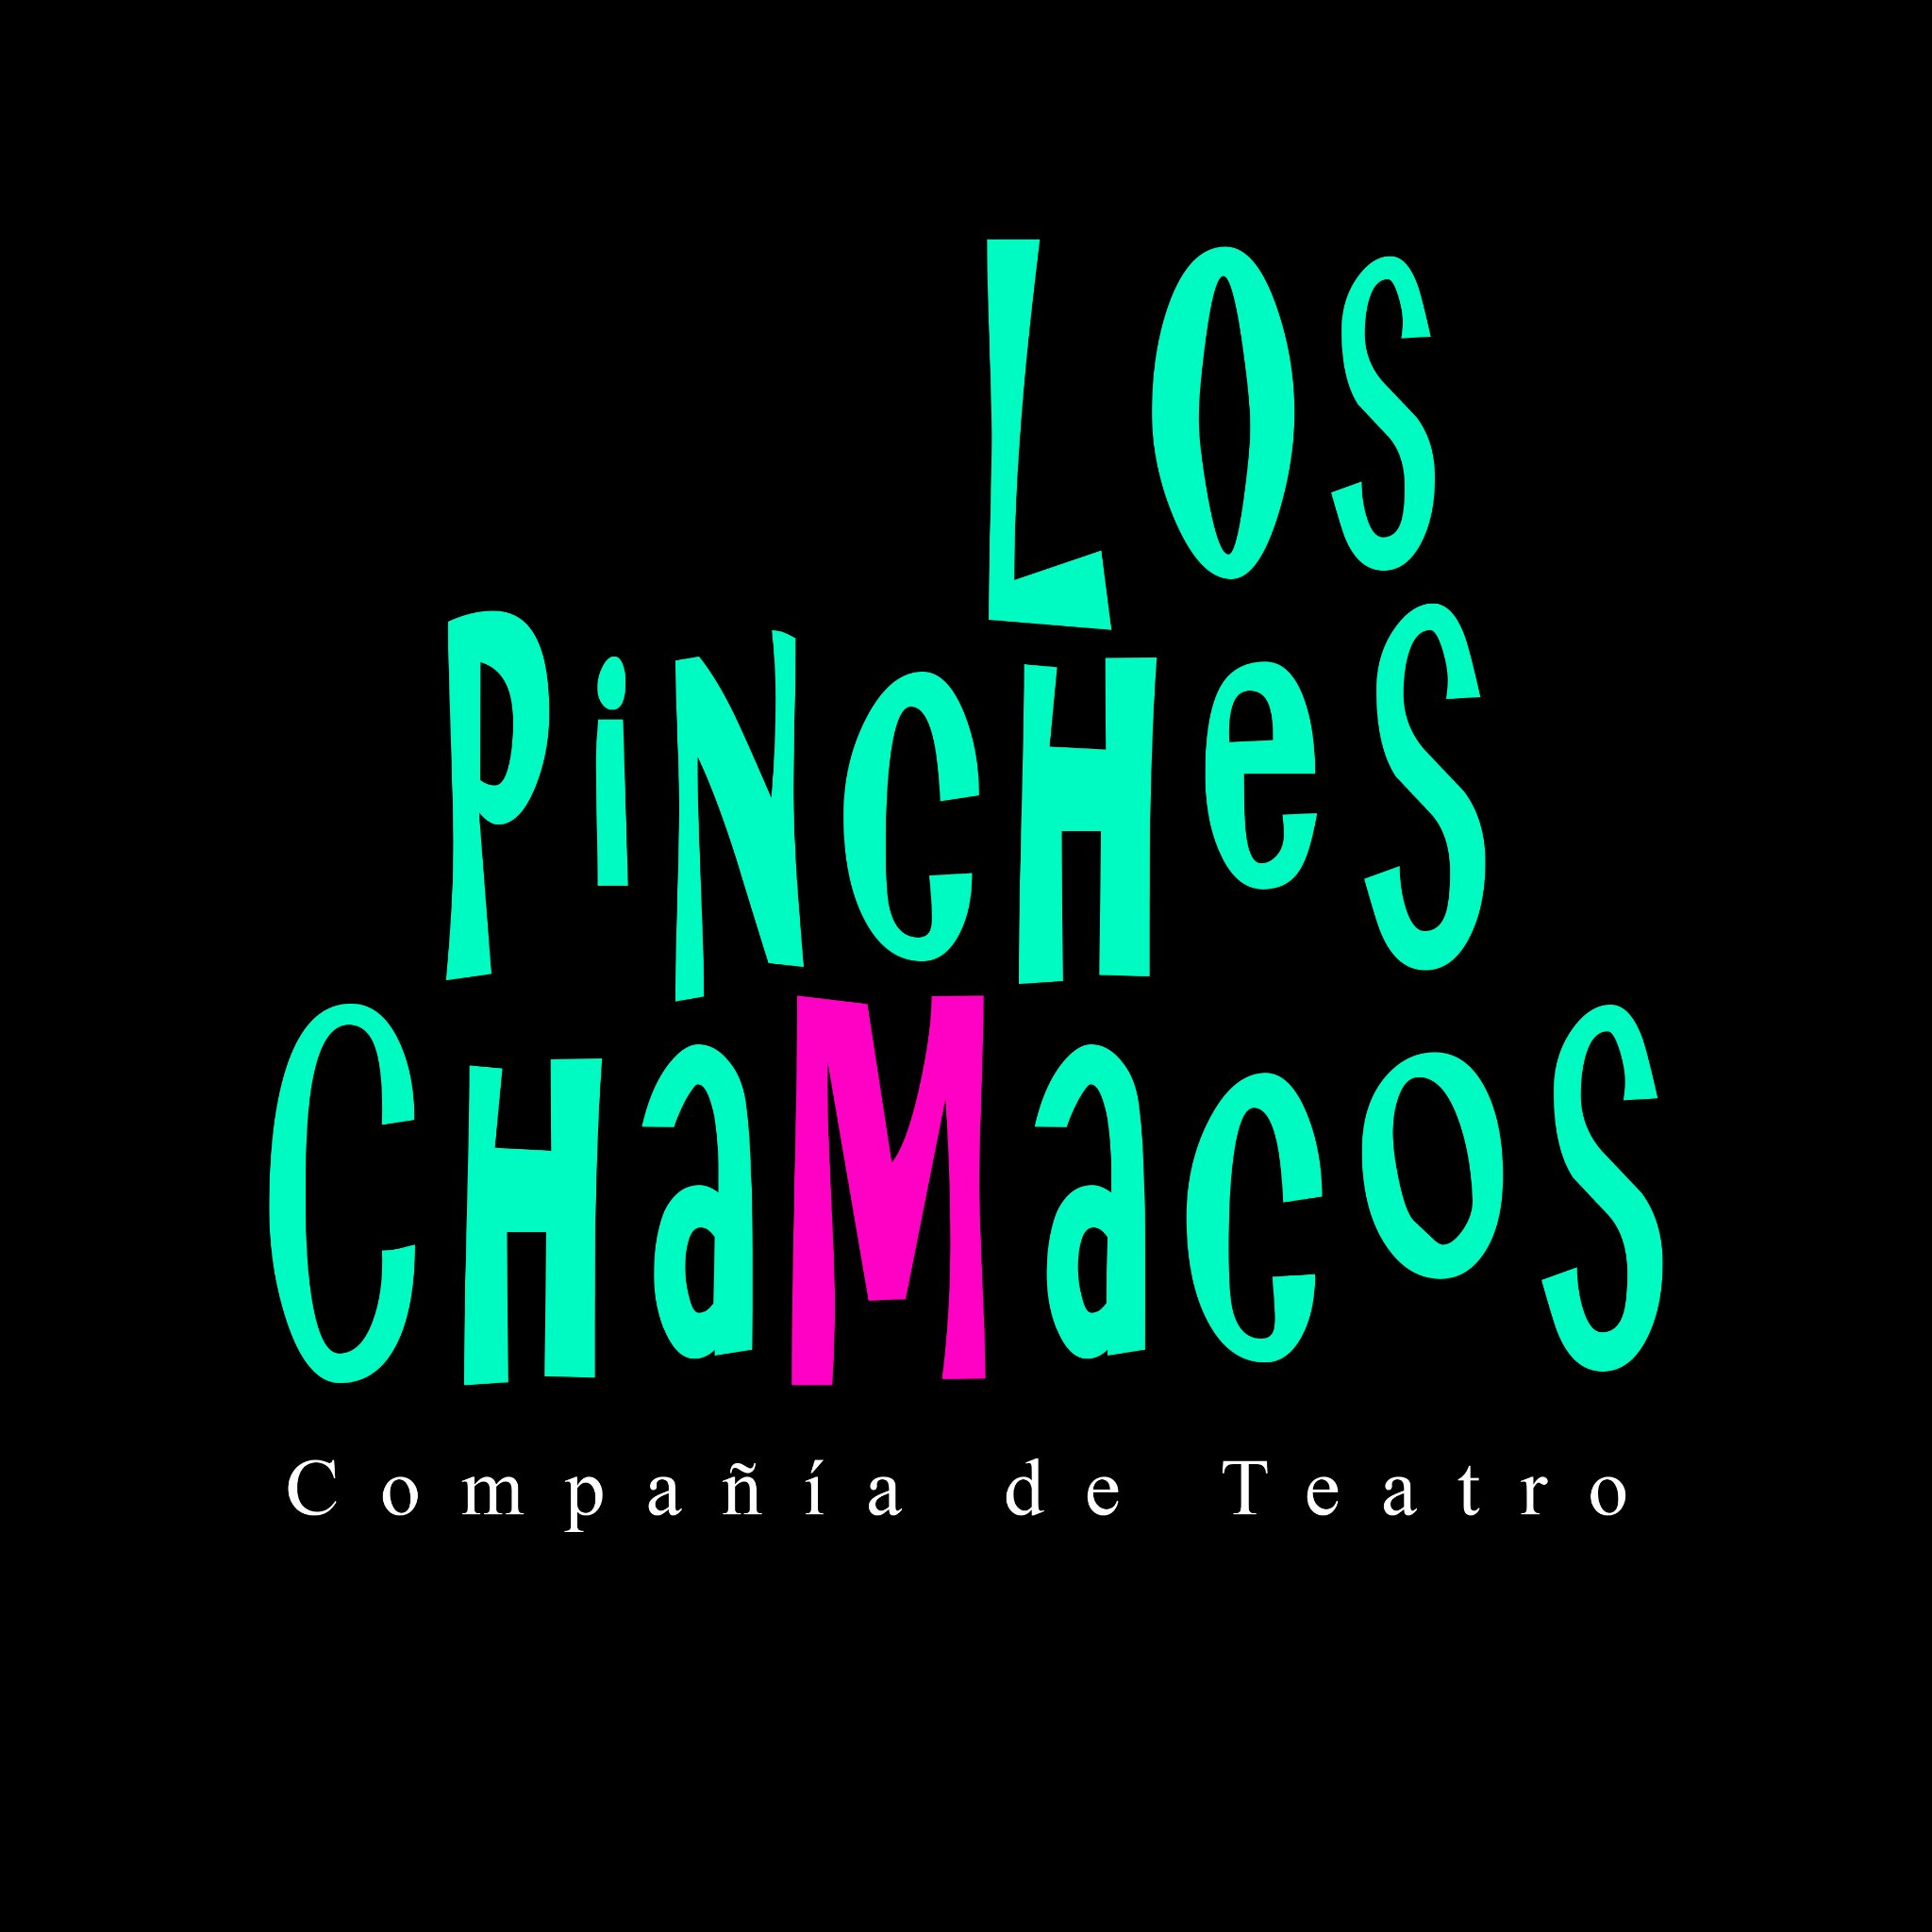 Somos una compañía de teatro mexicano y producimos obras de autores mexicanos que abordan asuntos de carácter social y contemporáneo, para jóvenes.